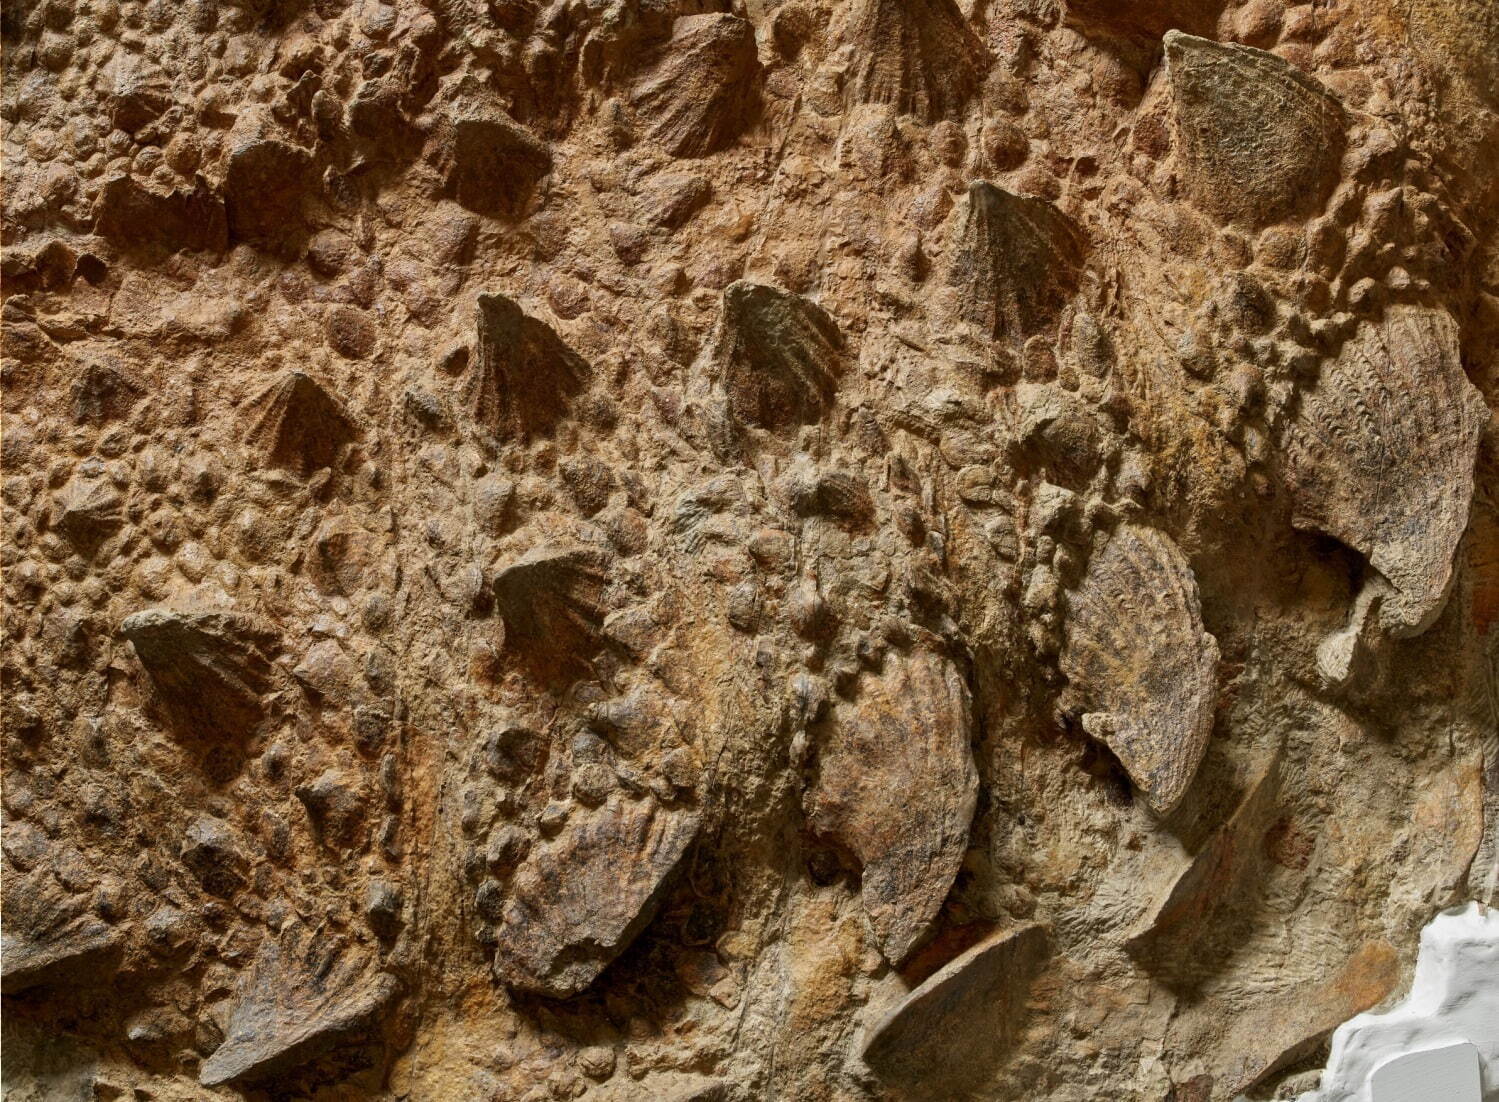 ズール・クルリヴァスタトルの胴体部分(実物化石)
©Royal Ontario Museum photographed by Paul Eekhoff